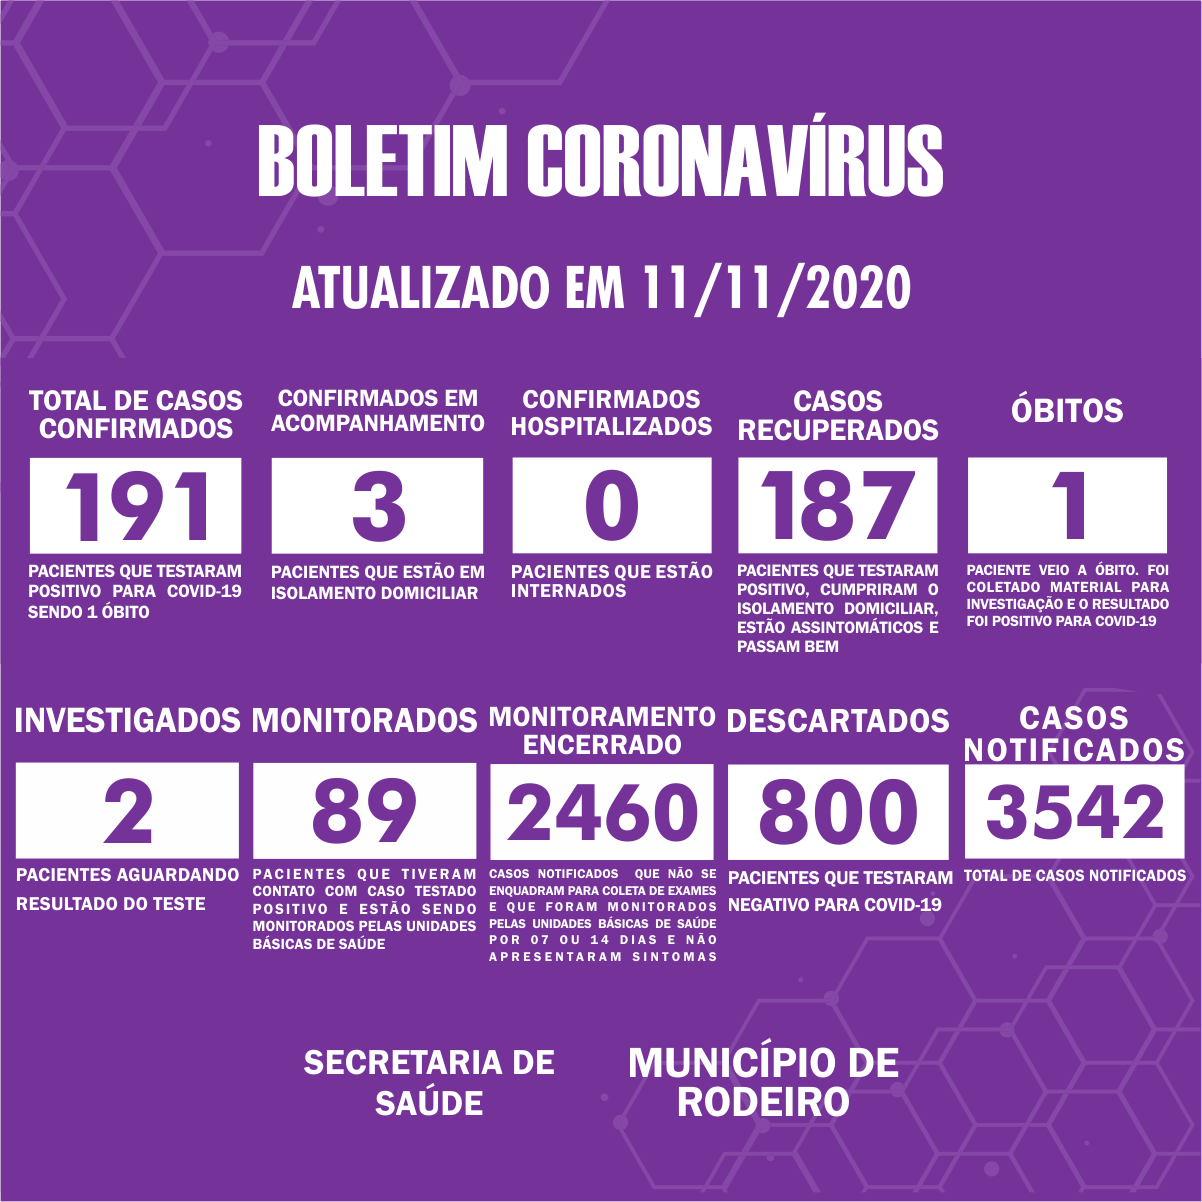 Boletim Epidemiológico do Município de Rodeiro sobre coronavírus, atualizado em 11/11/2020